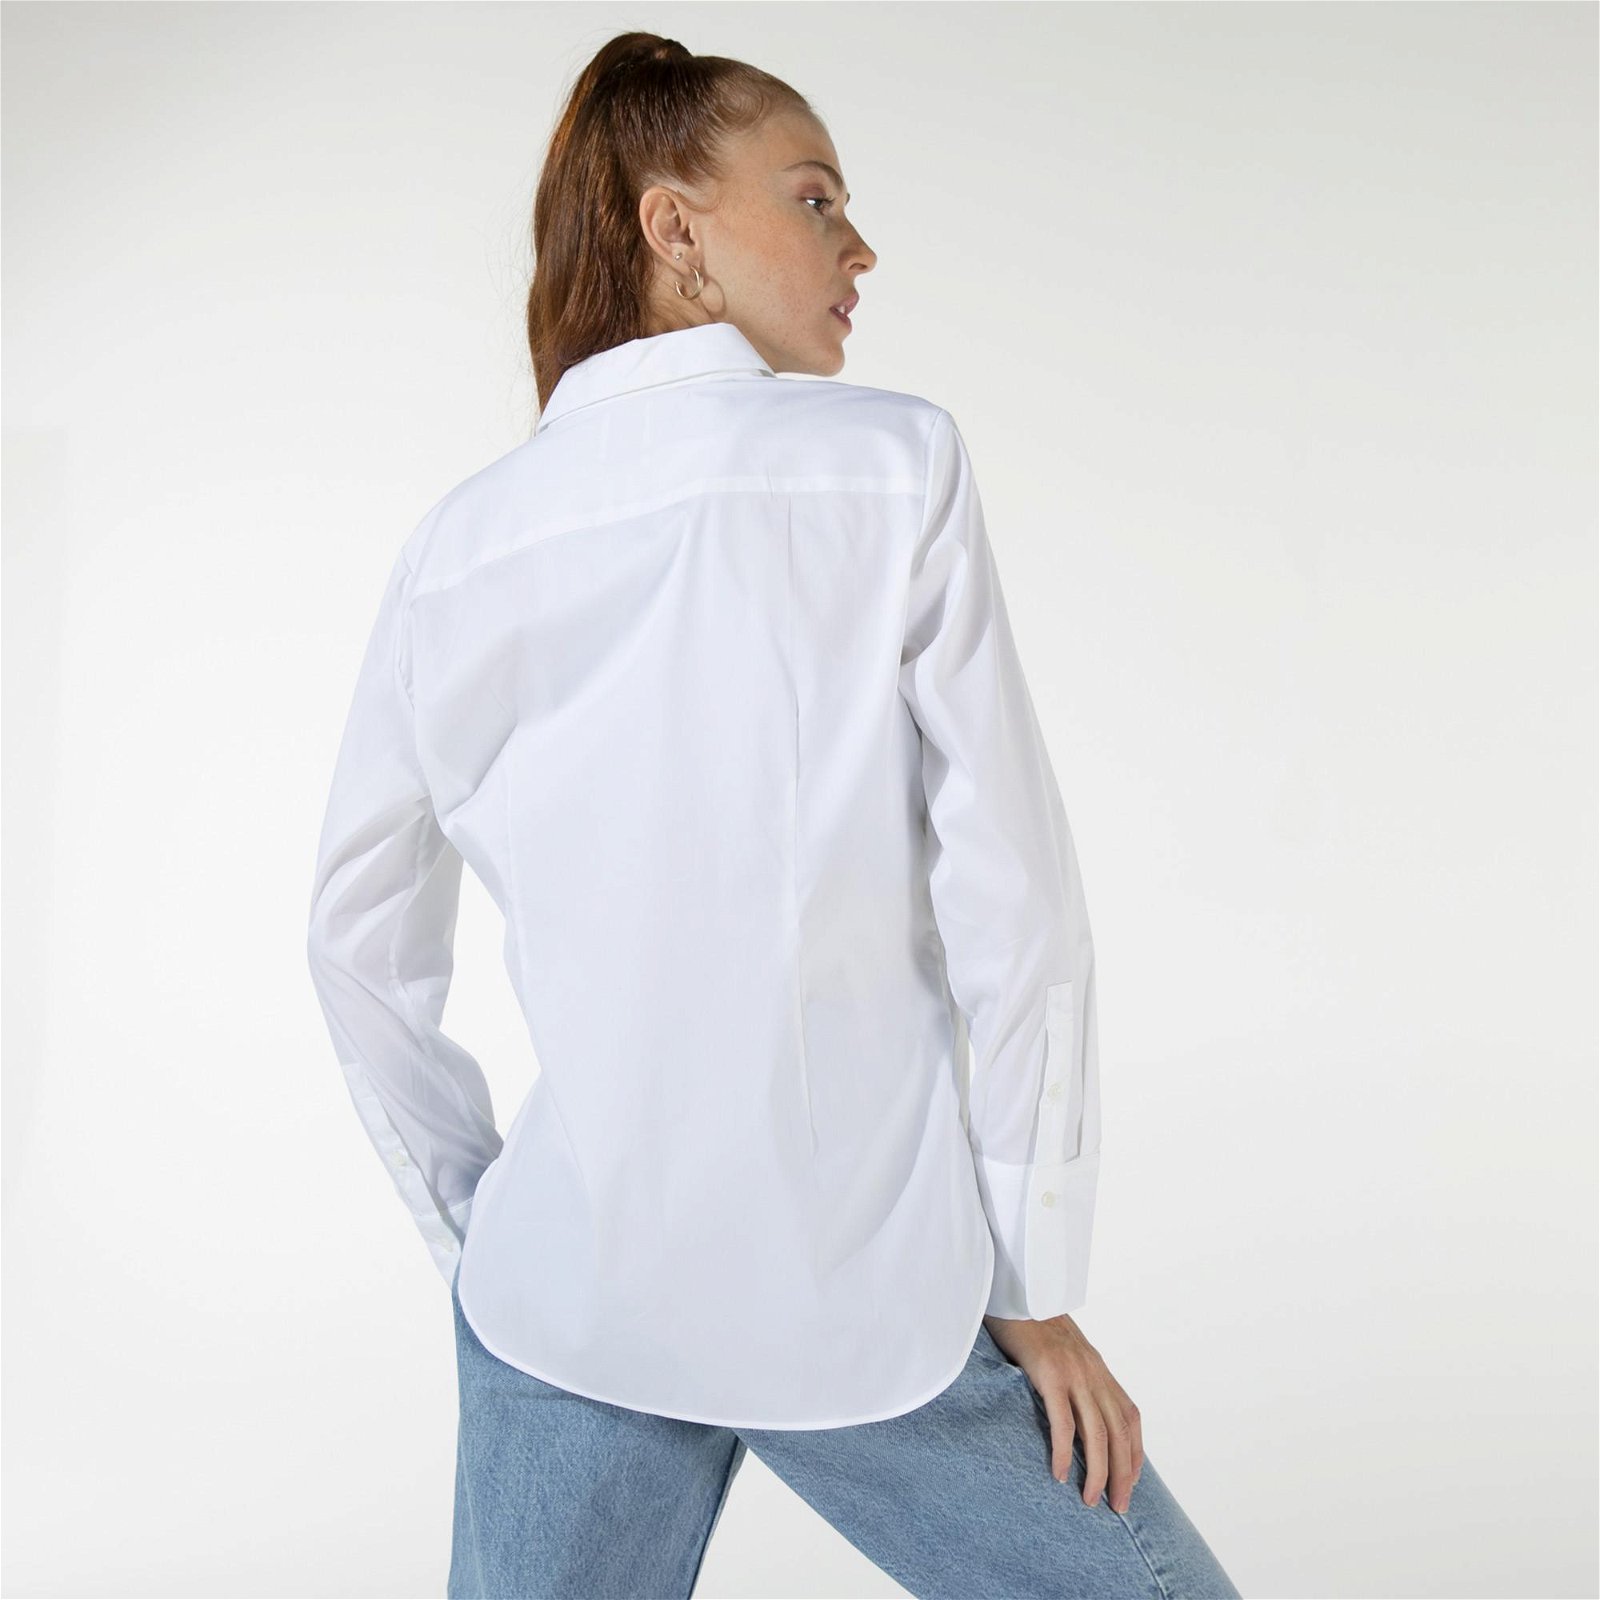 BiL'S Paris Klasik Yaka Slim Fit Poplin Kumaş Kadın Beyaz Gömlek